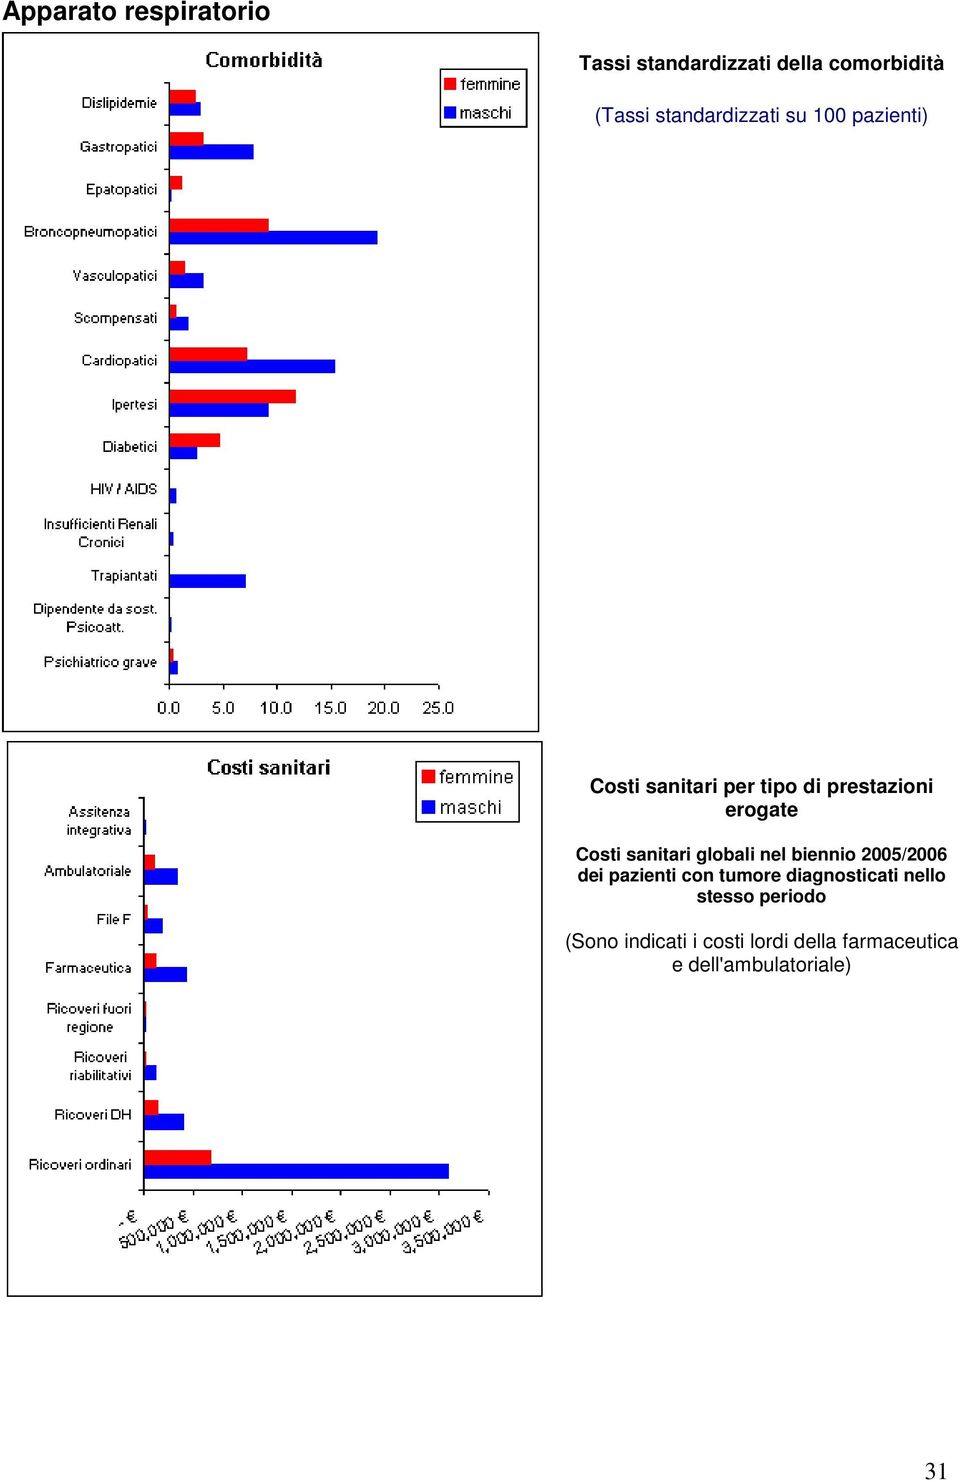 Costi sanitari globali nel biennio 2005/2006 dei pazienti con tumore